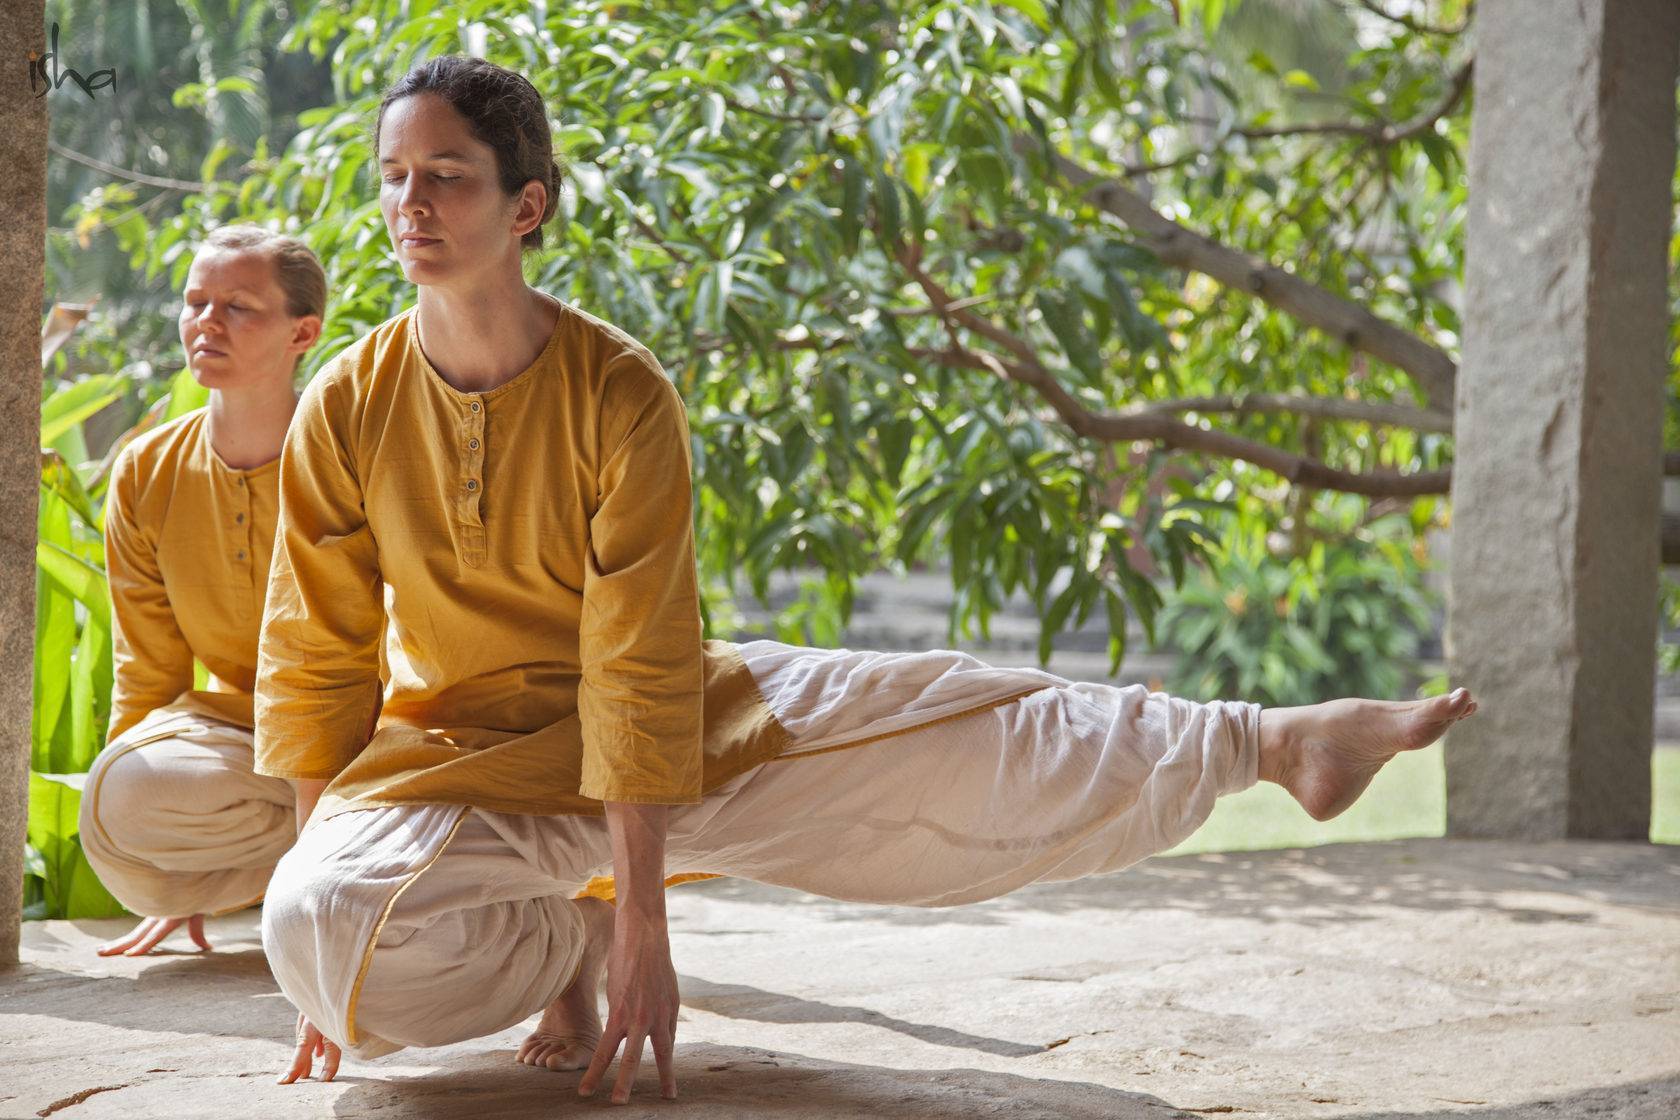 Йога челлендж на двоих человек с фото: легкие и сложные позы